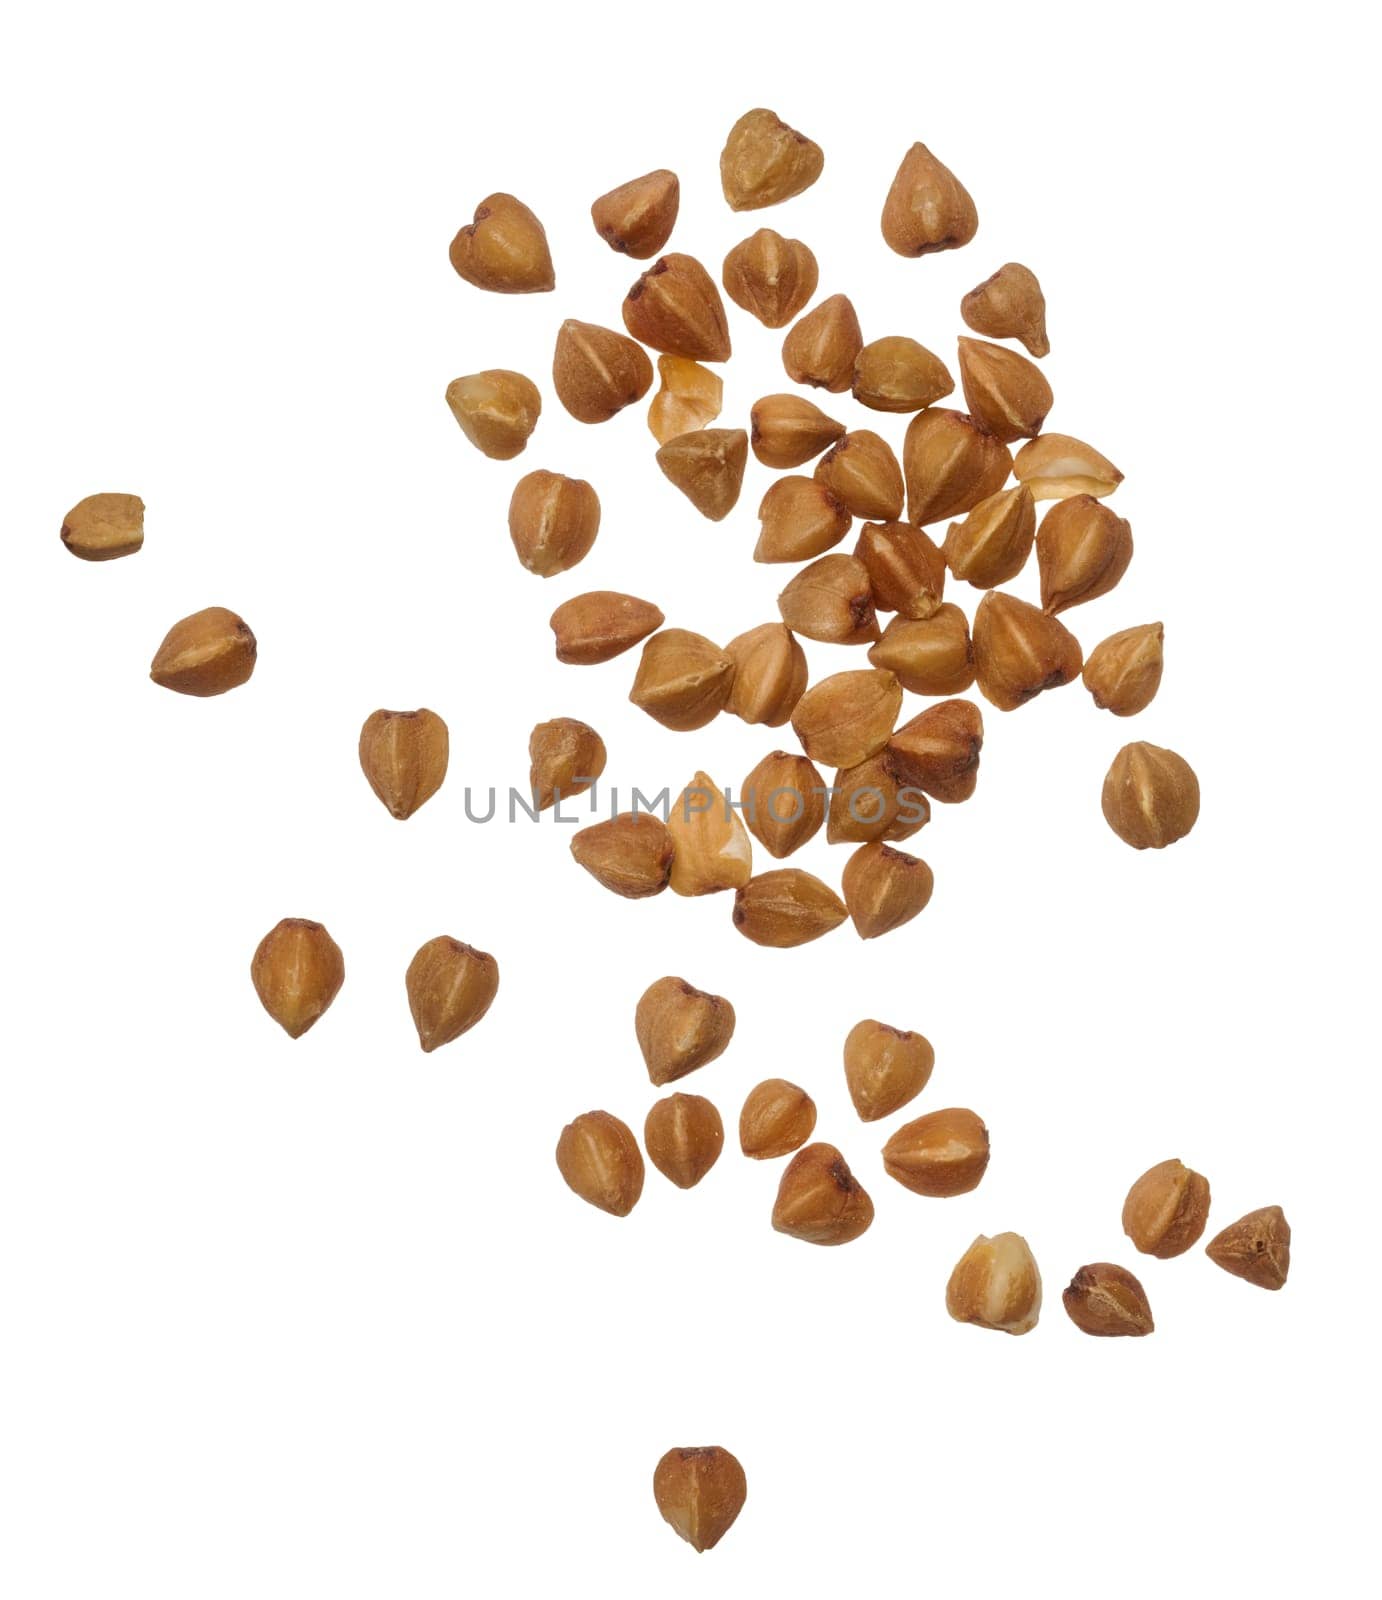 Raw buckwheat grains on isolated background by ndanko